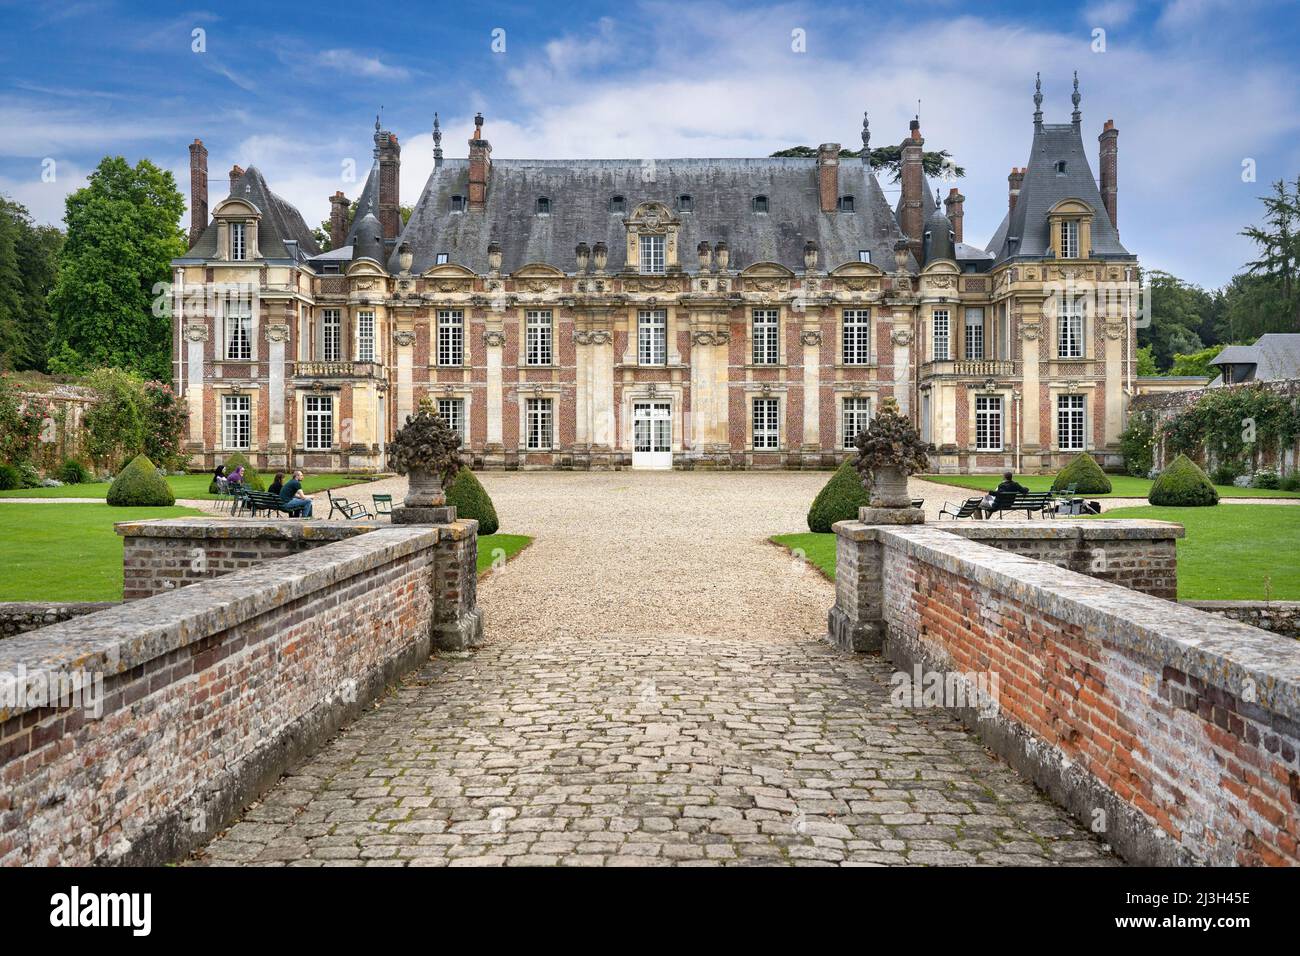 Frankreich, seine Maritime, Tourville sur Arques, Schloss Miromesnil, Geburtsort von Guy de Maupassant, bemerkenswerter Gemüsegarten Stockfoto